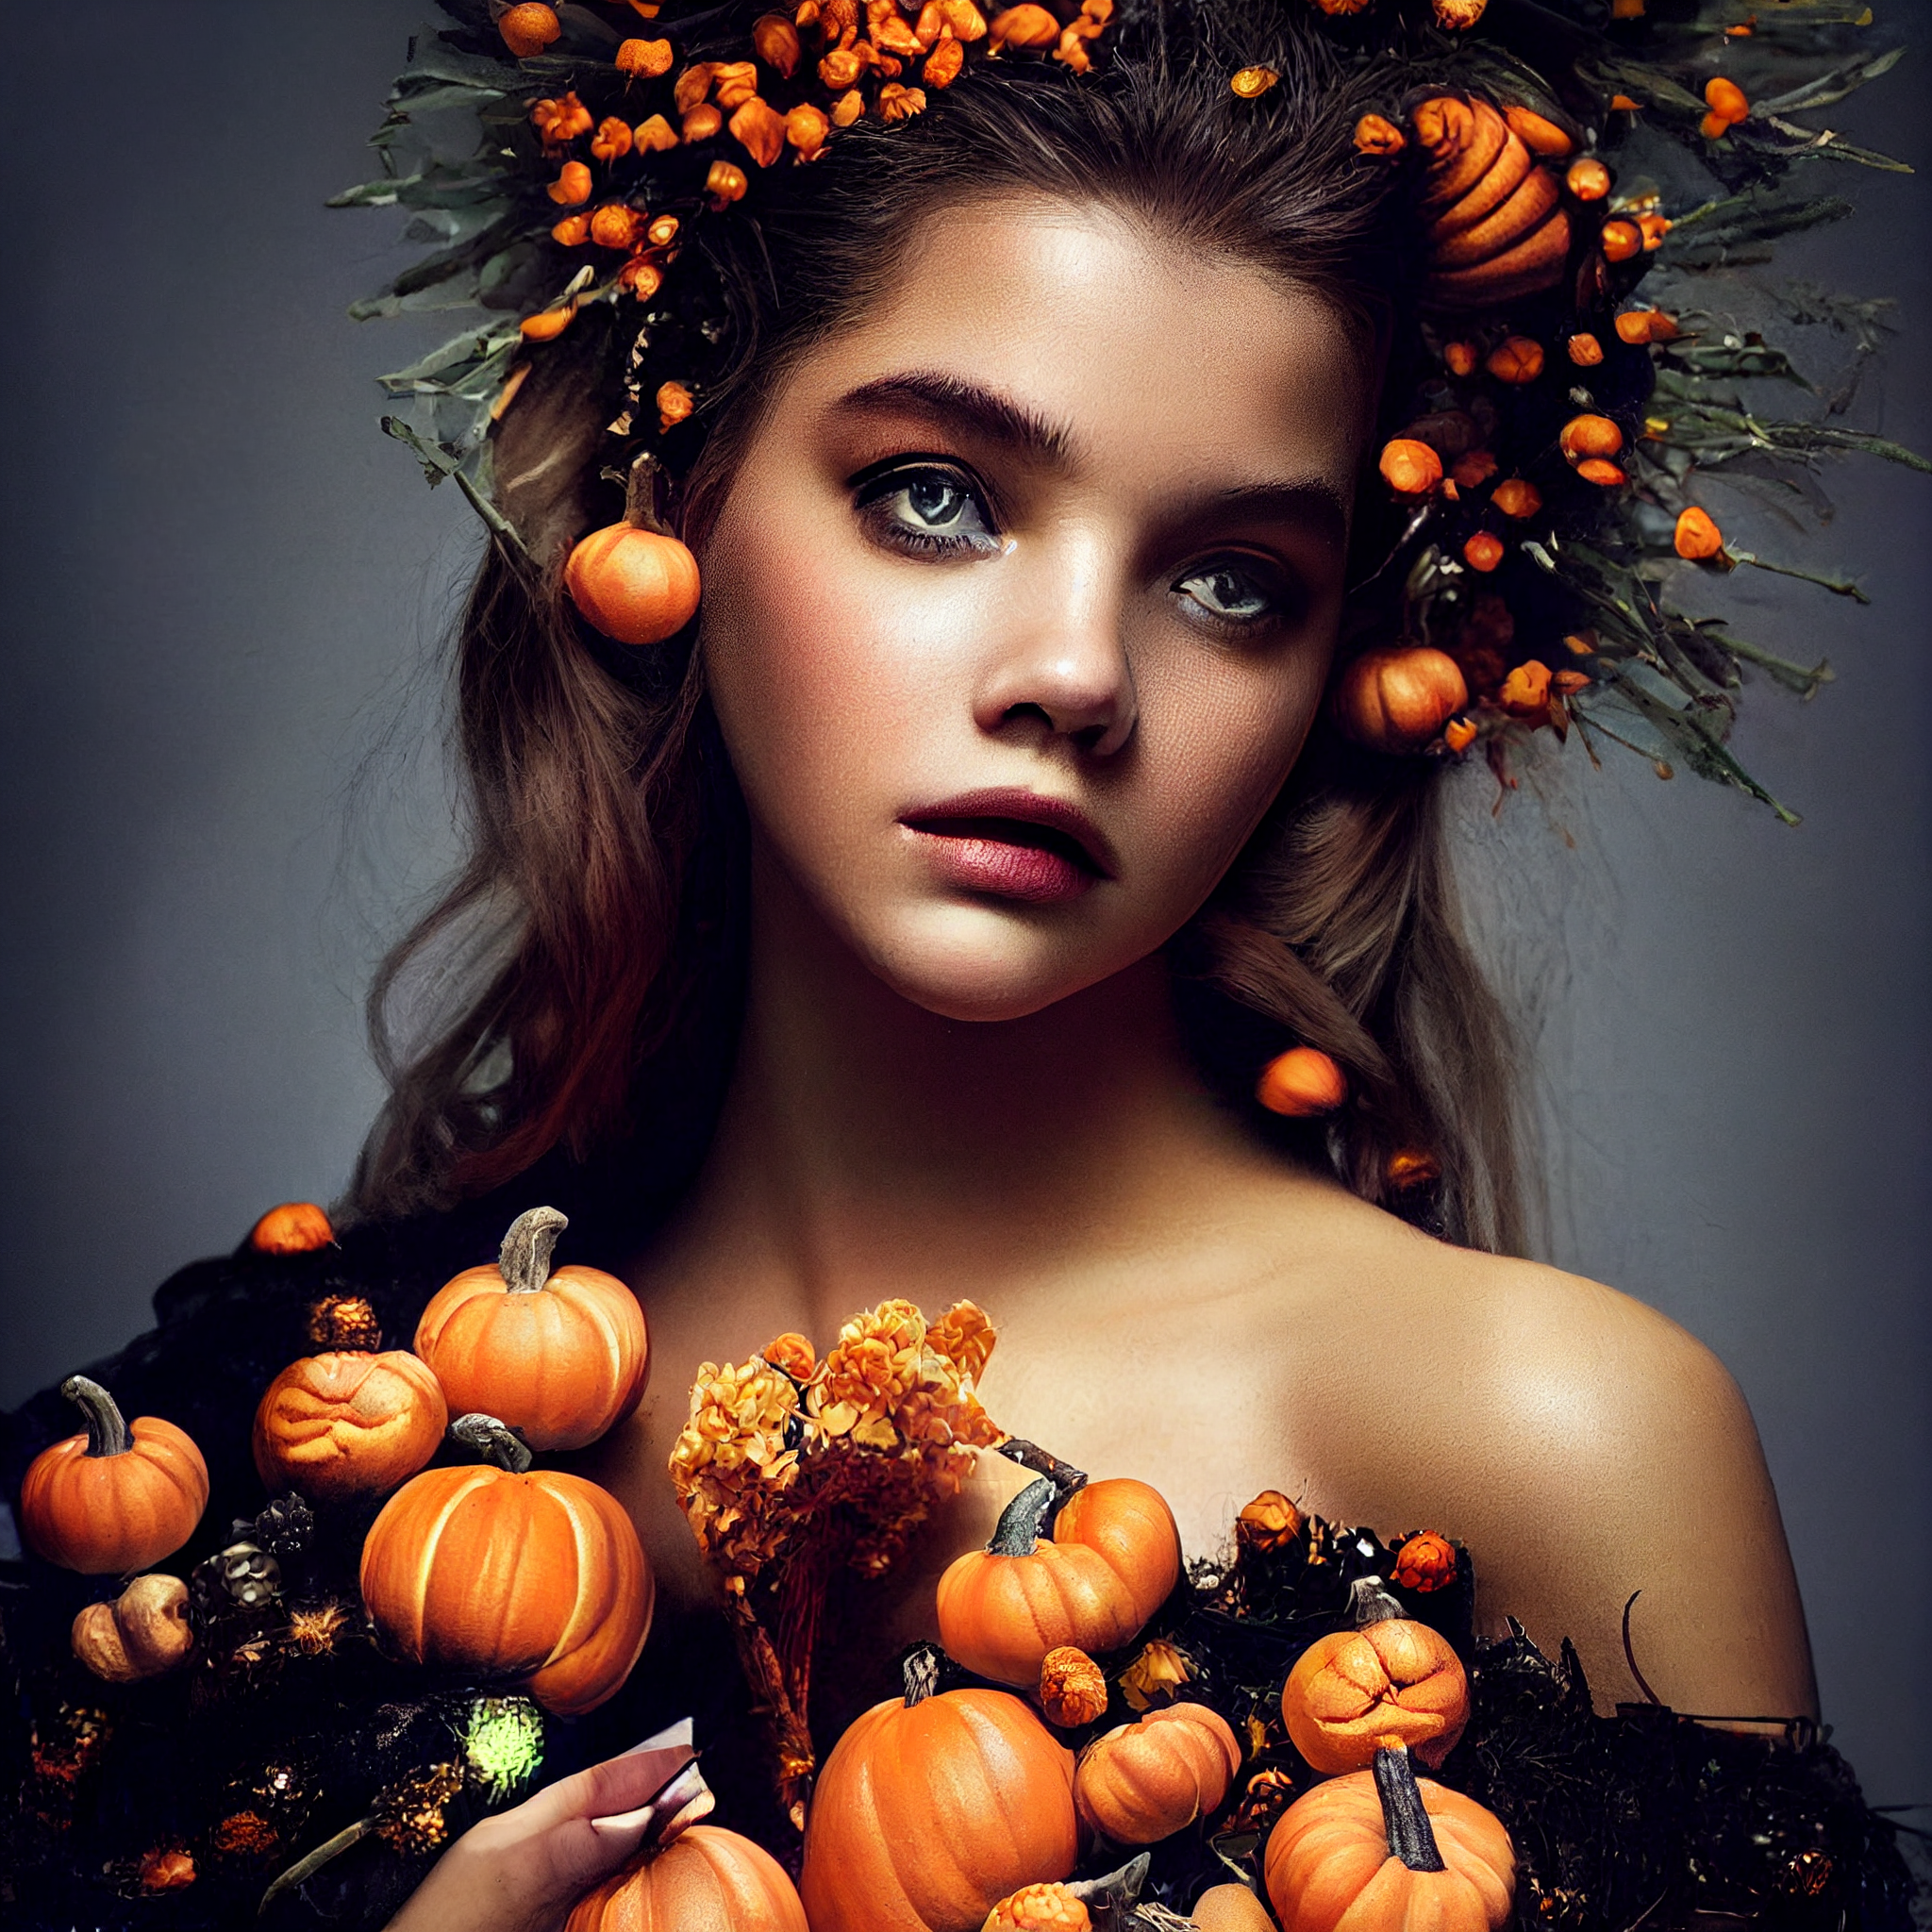 A little bit of neuro-pumpkins - Нейронные сети, Art, Halloween, Halloween pumpkin, Witches, Art, Longpost